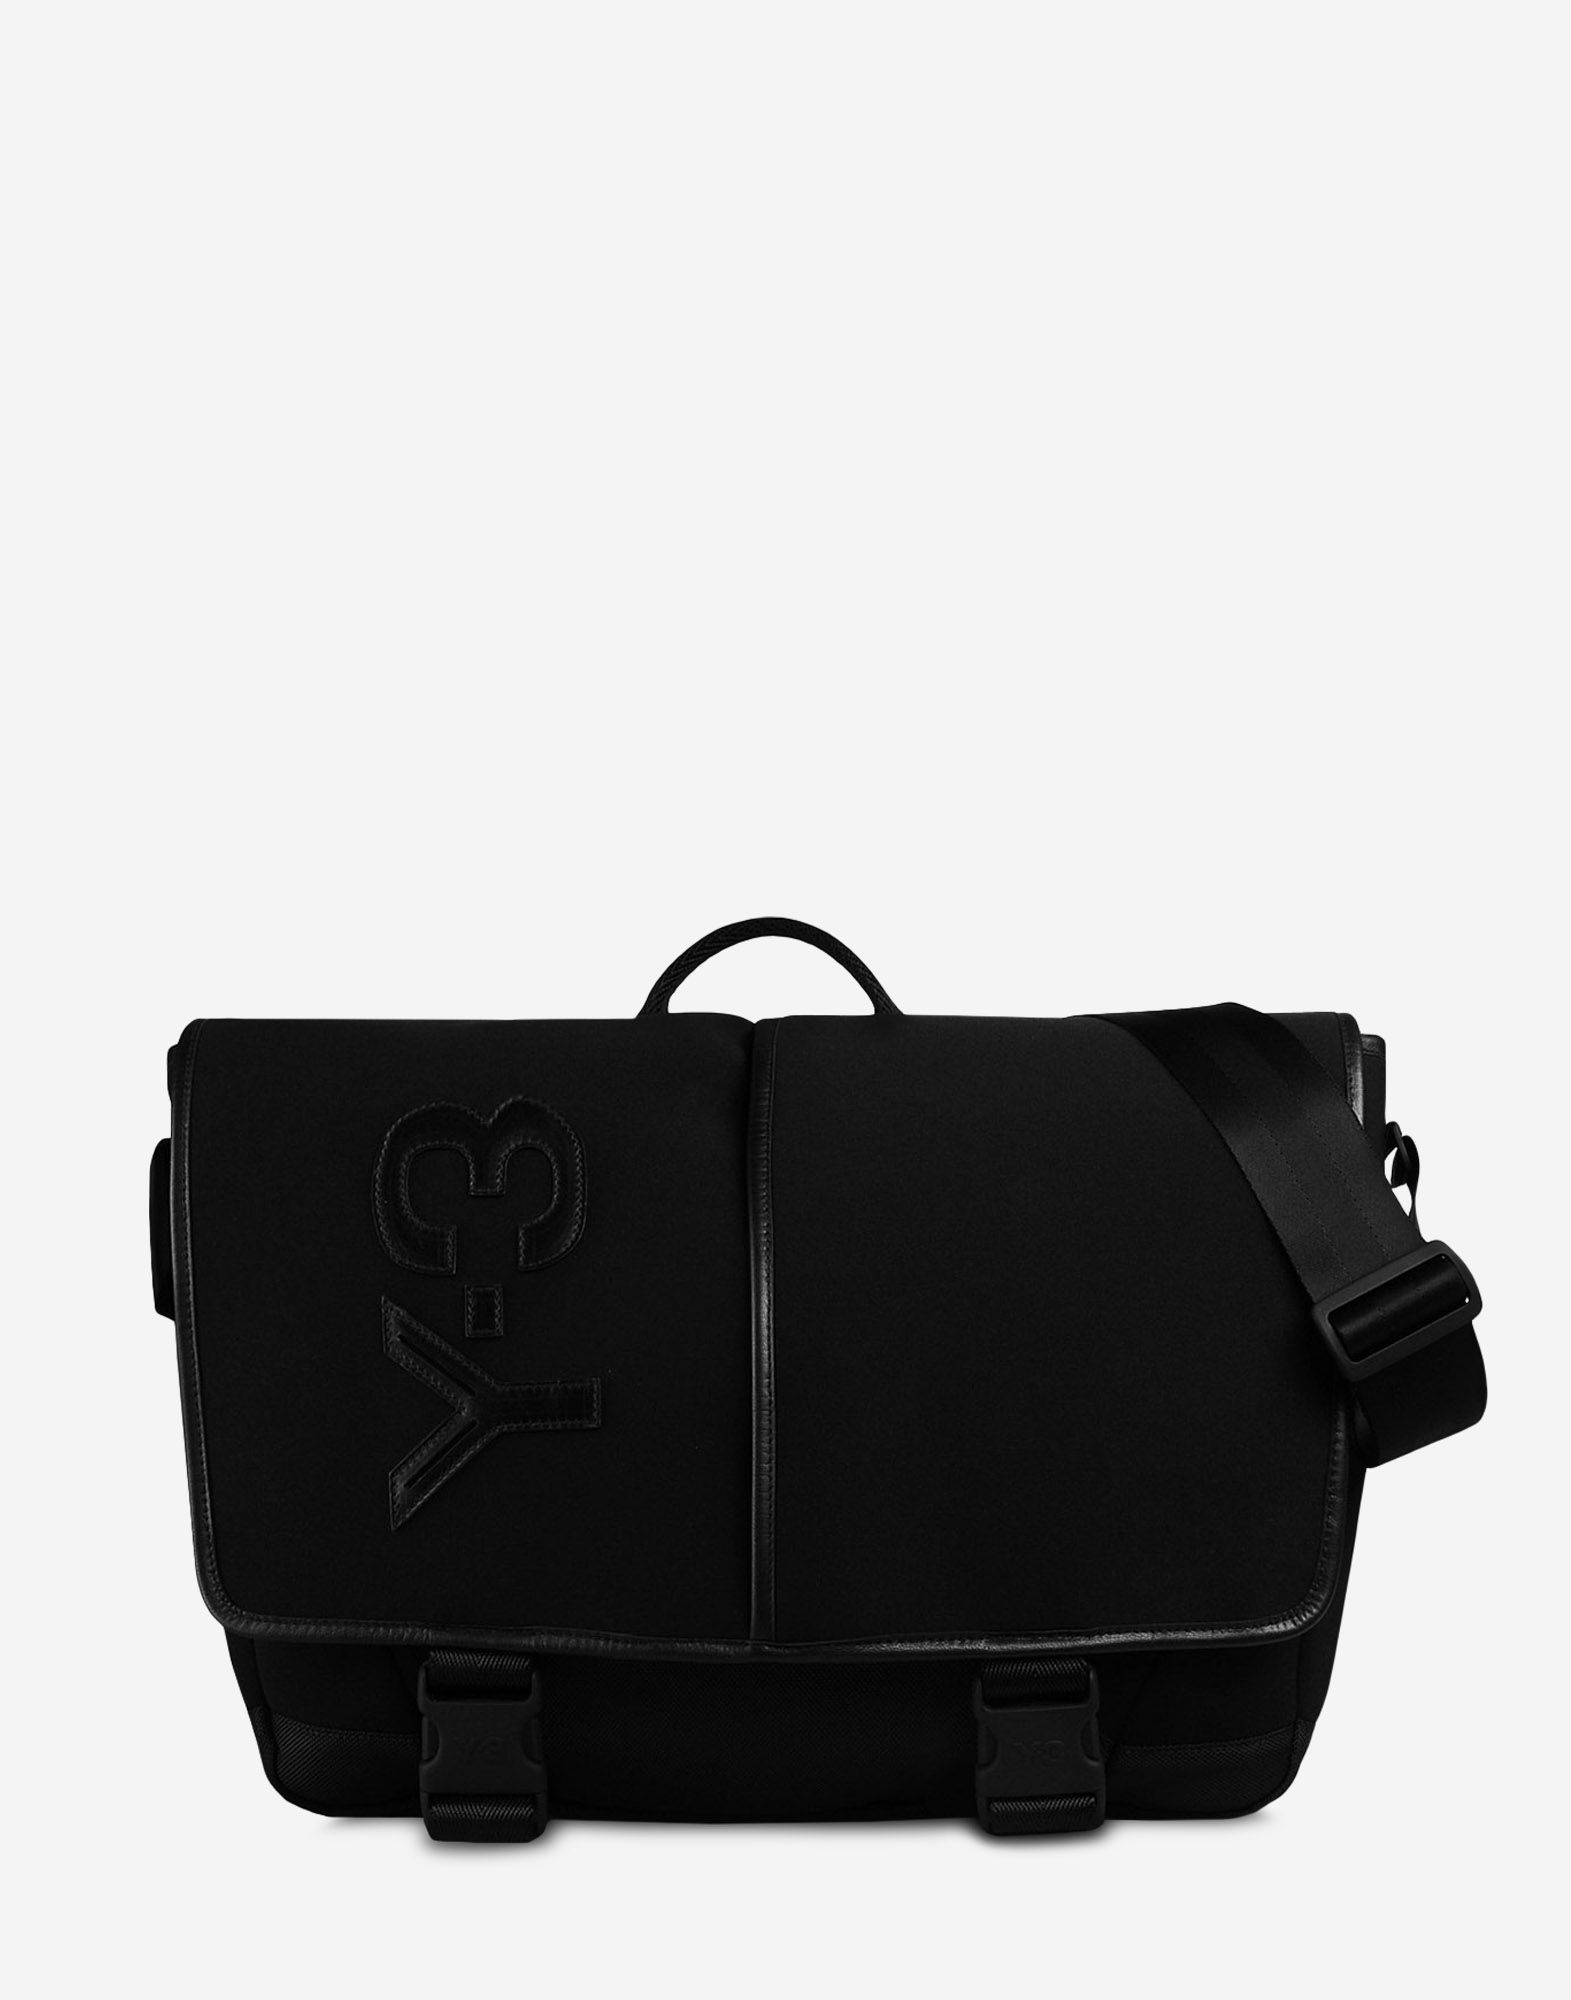 Y 3 Day Messenger Bag ‎ ‎Shoulder Bag‎ ‎ ‎ | Adidas Y-3 Official Site